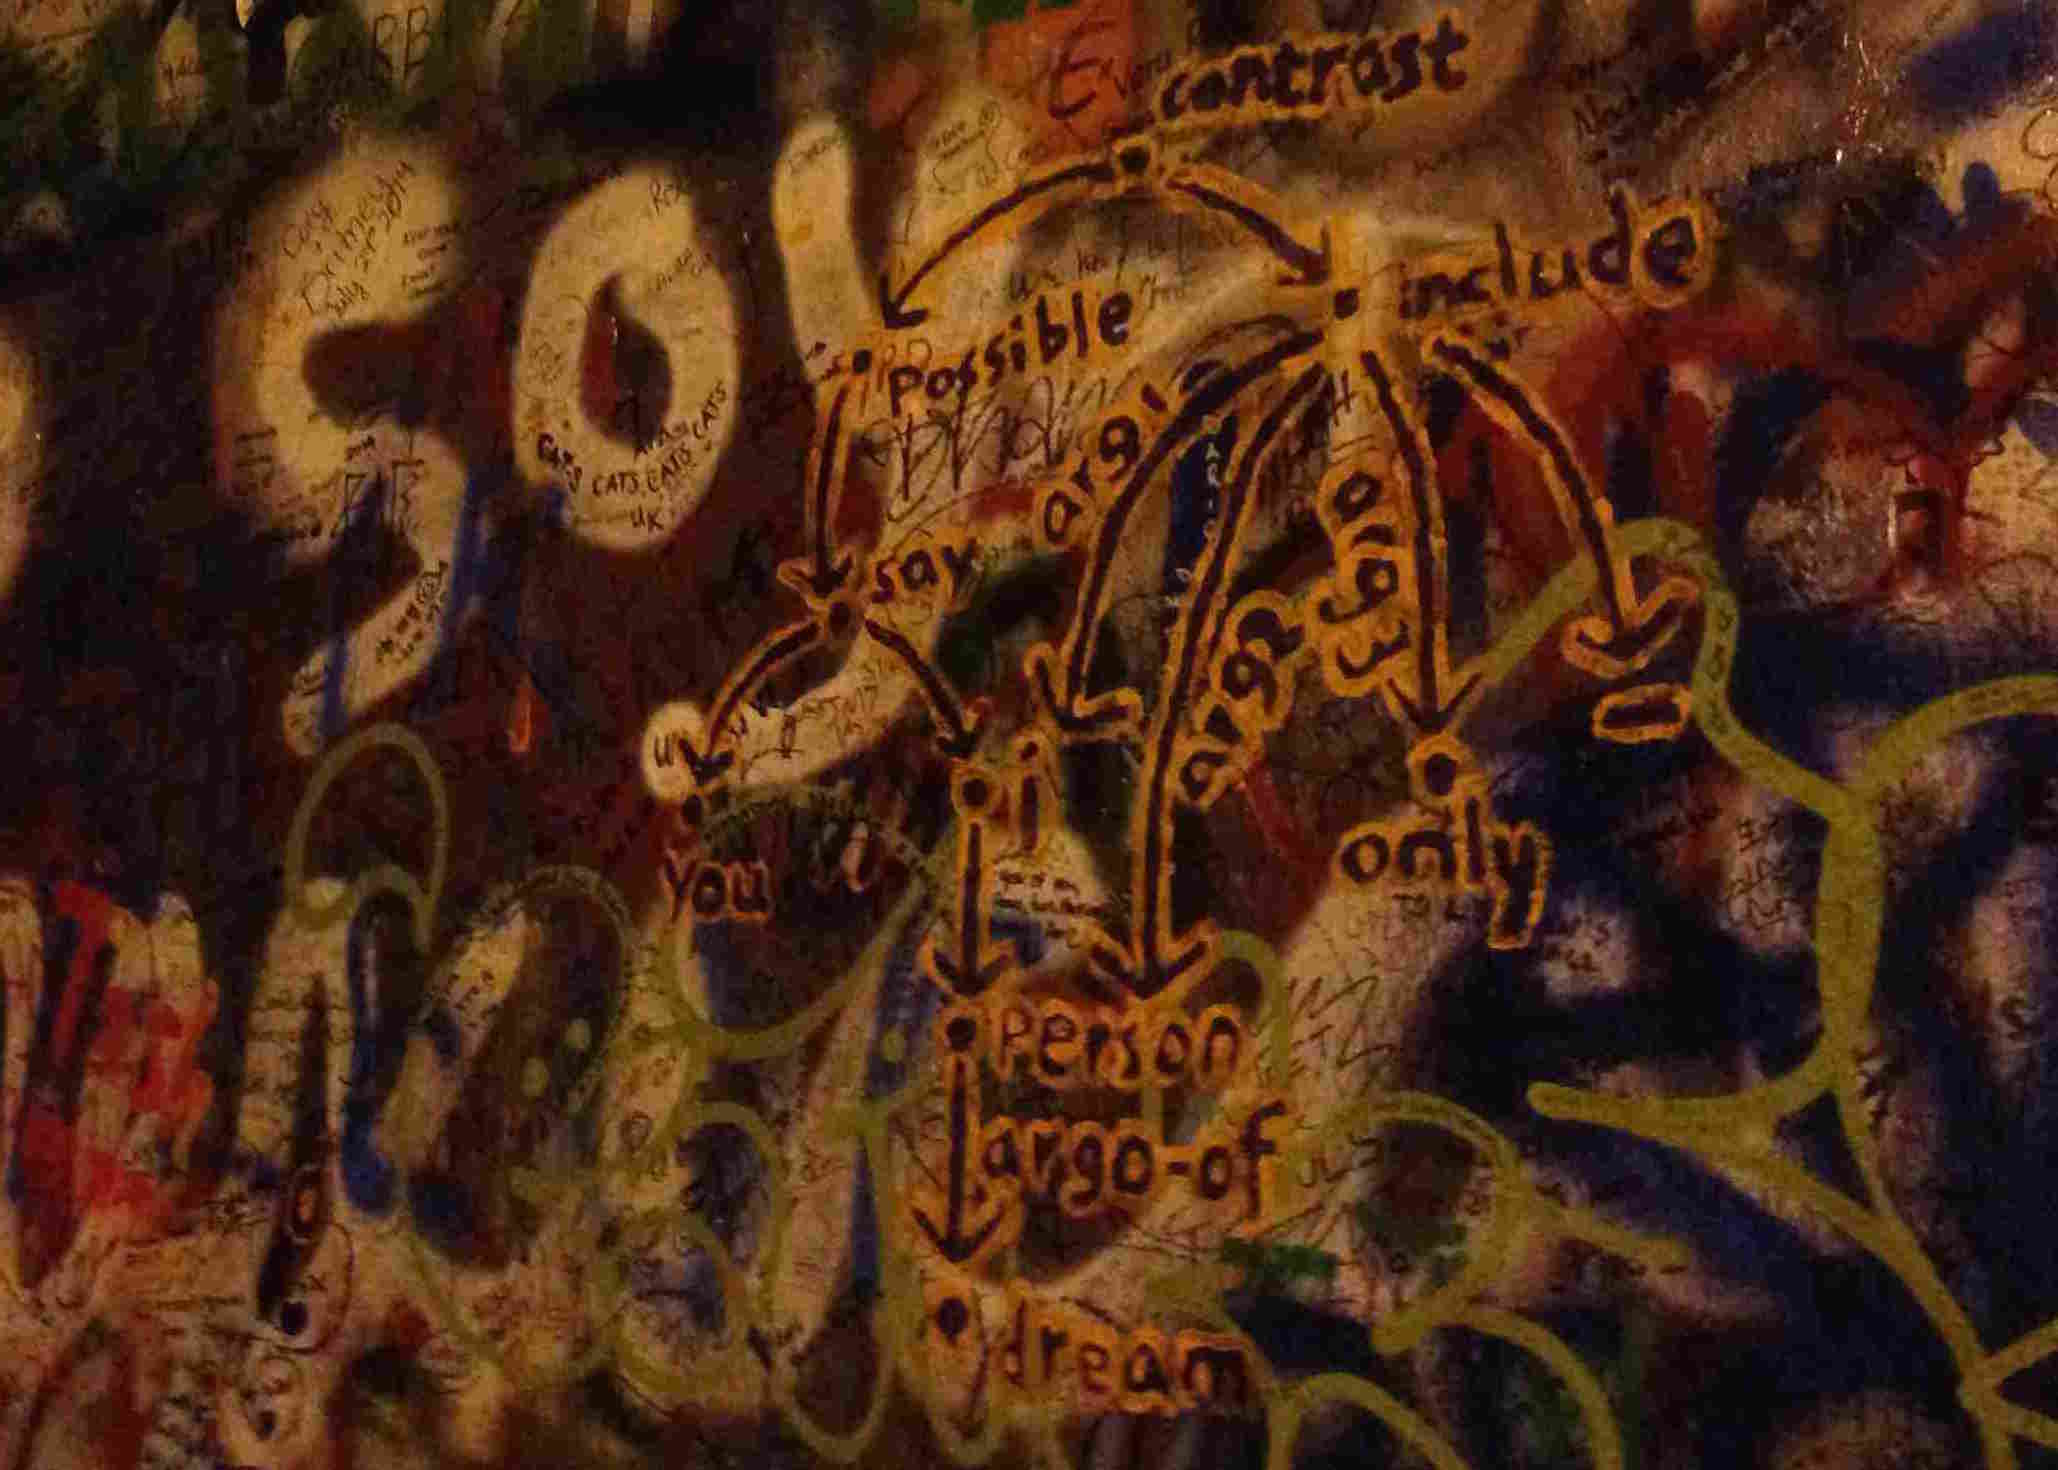 At the John Lennon Wall, Prague (credit: Jeff Flanigan, Chuan Wang, Yuchen Zhang)